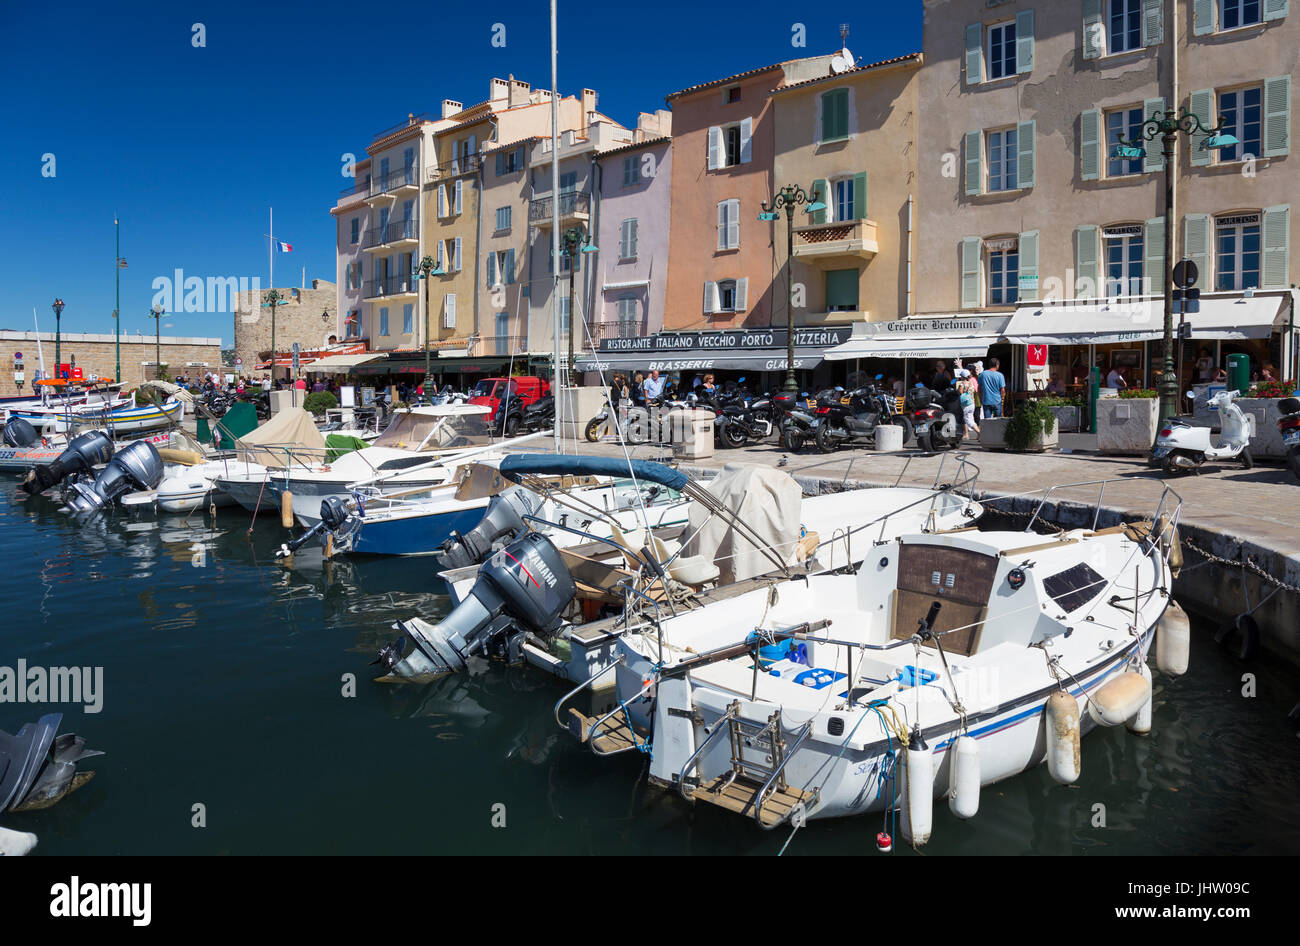 Saint-Tropez Harbour ( Le Vieux port de Saint Tropez), France Stock ...